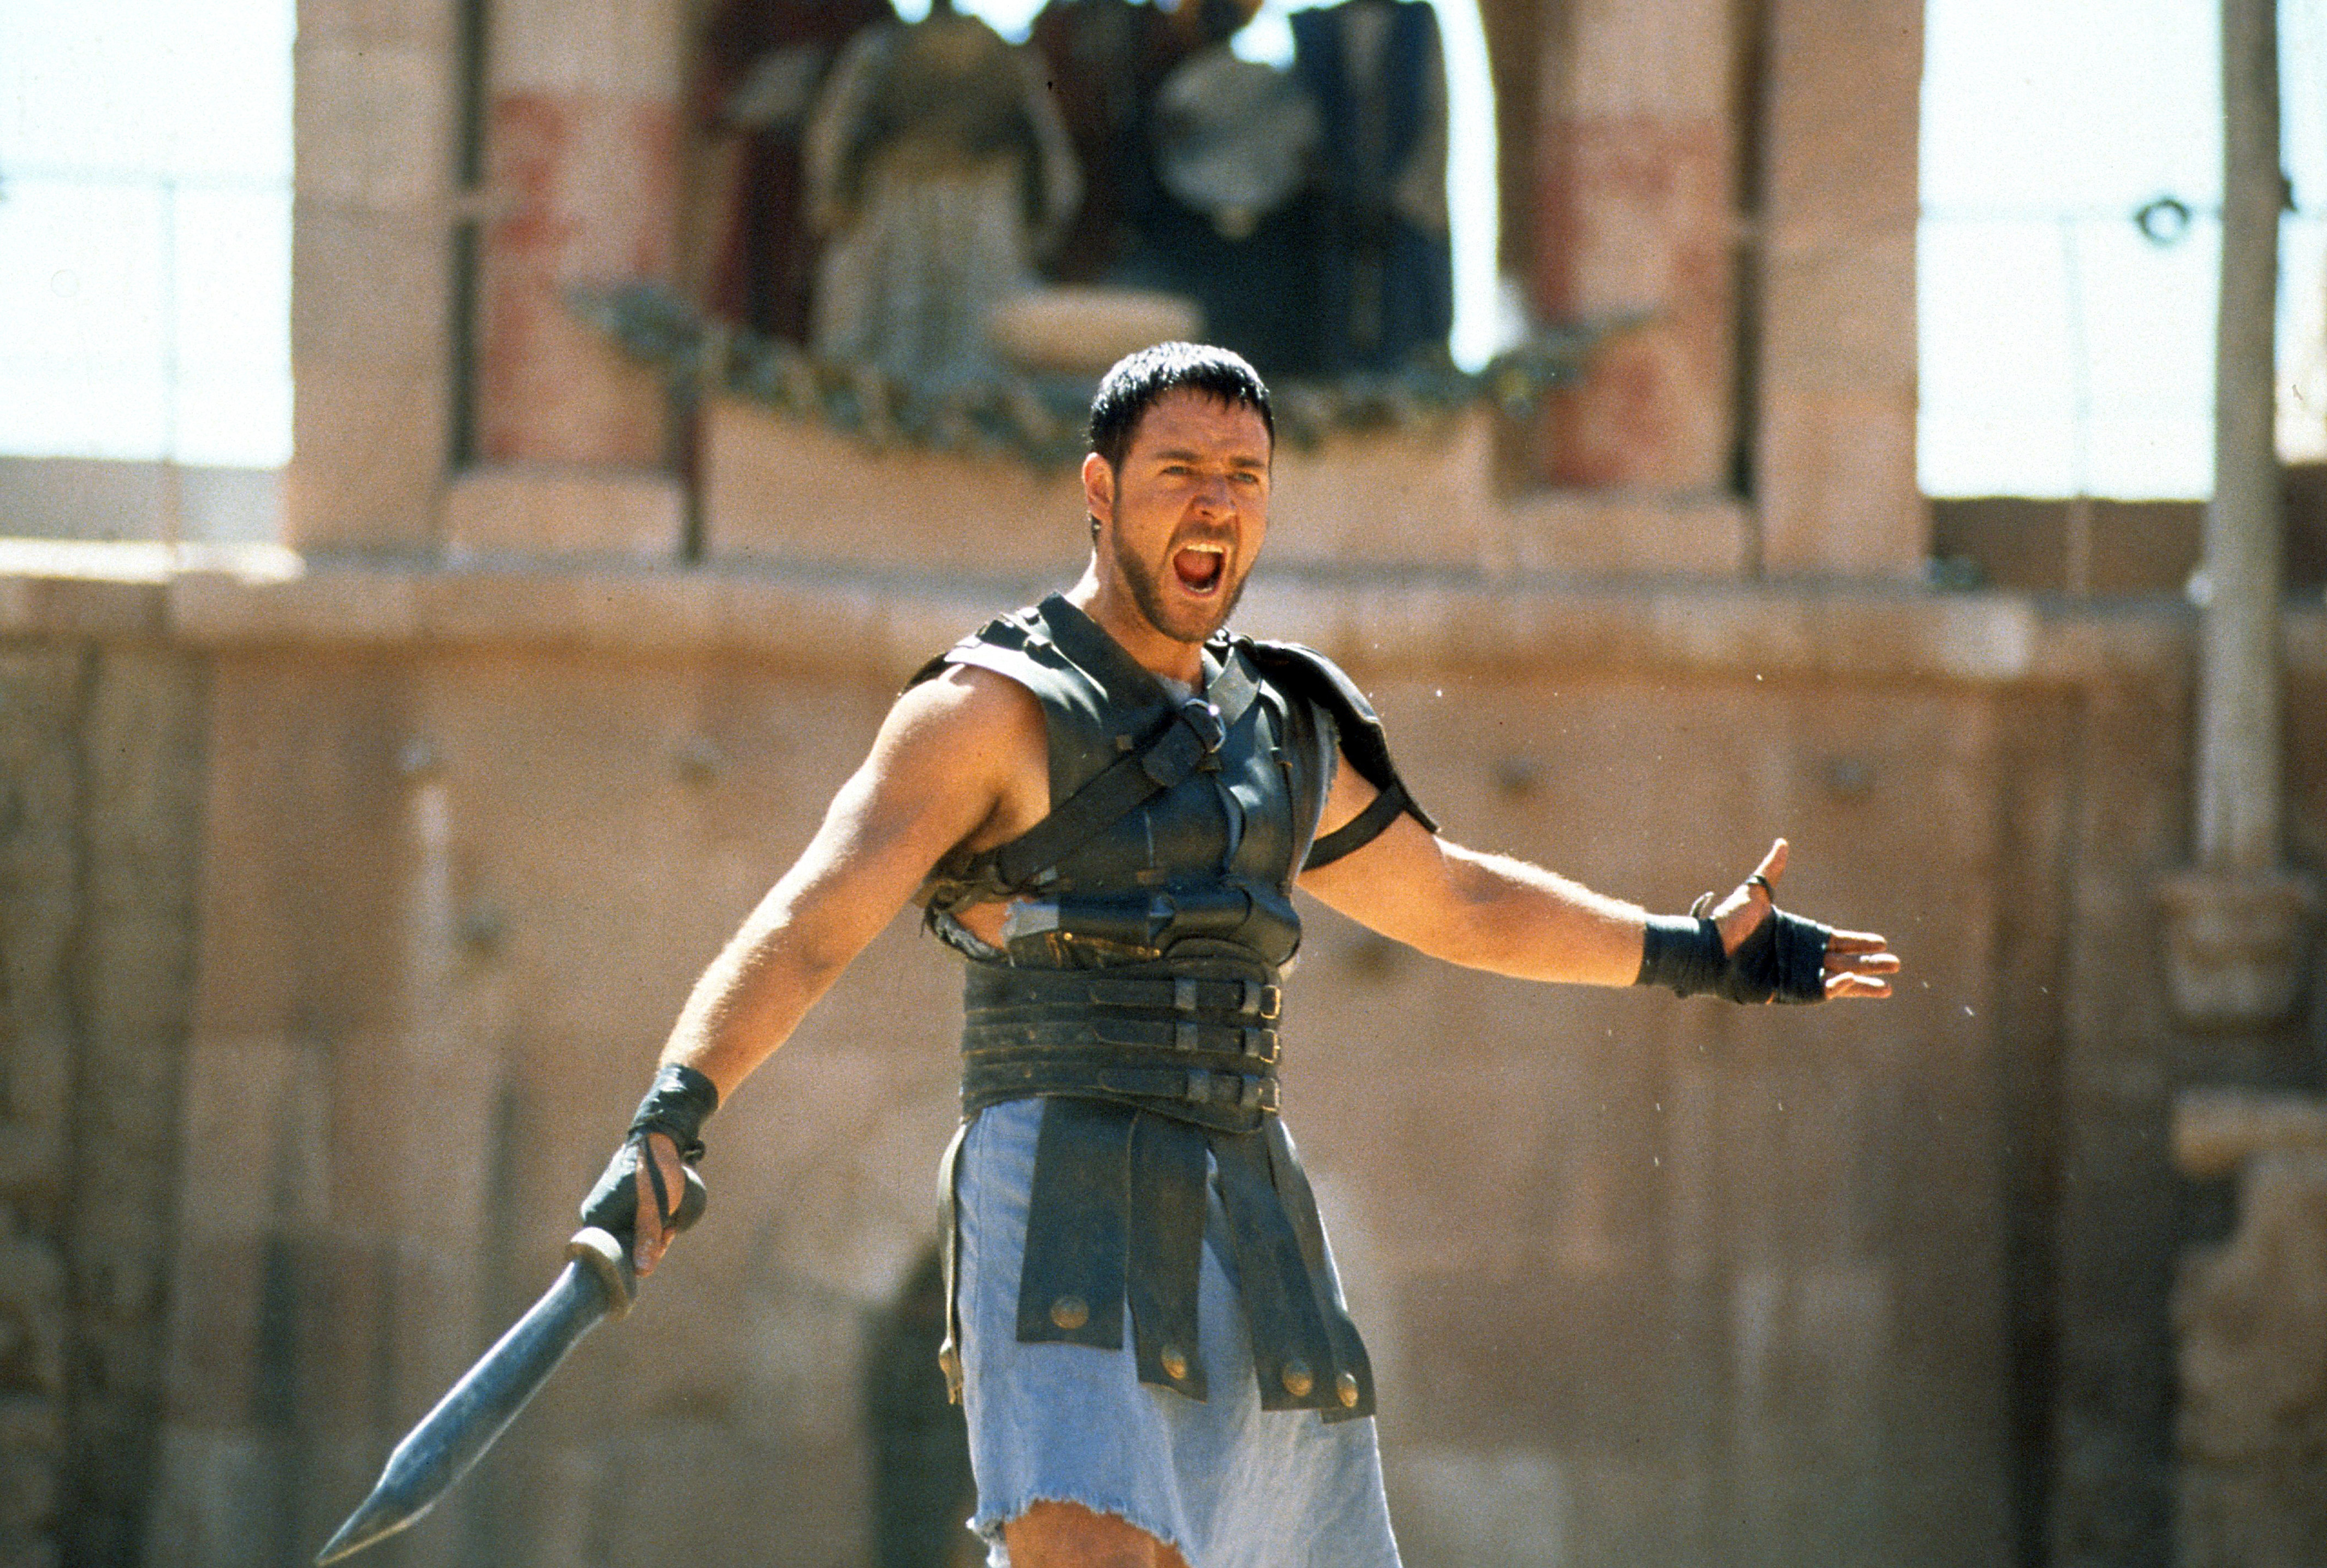 Russell es mejor conocido por protagonizar la película épica Gladiator.